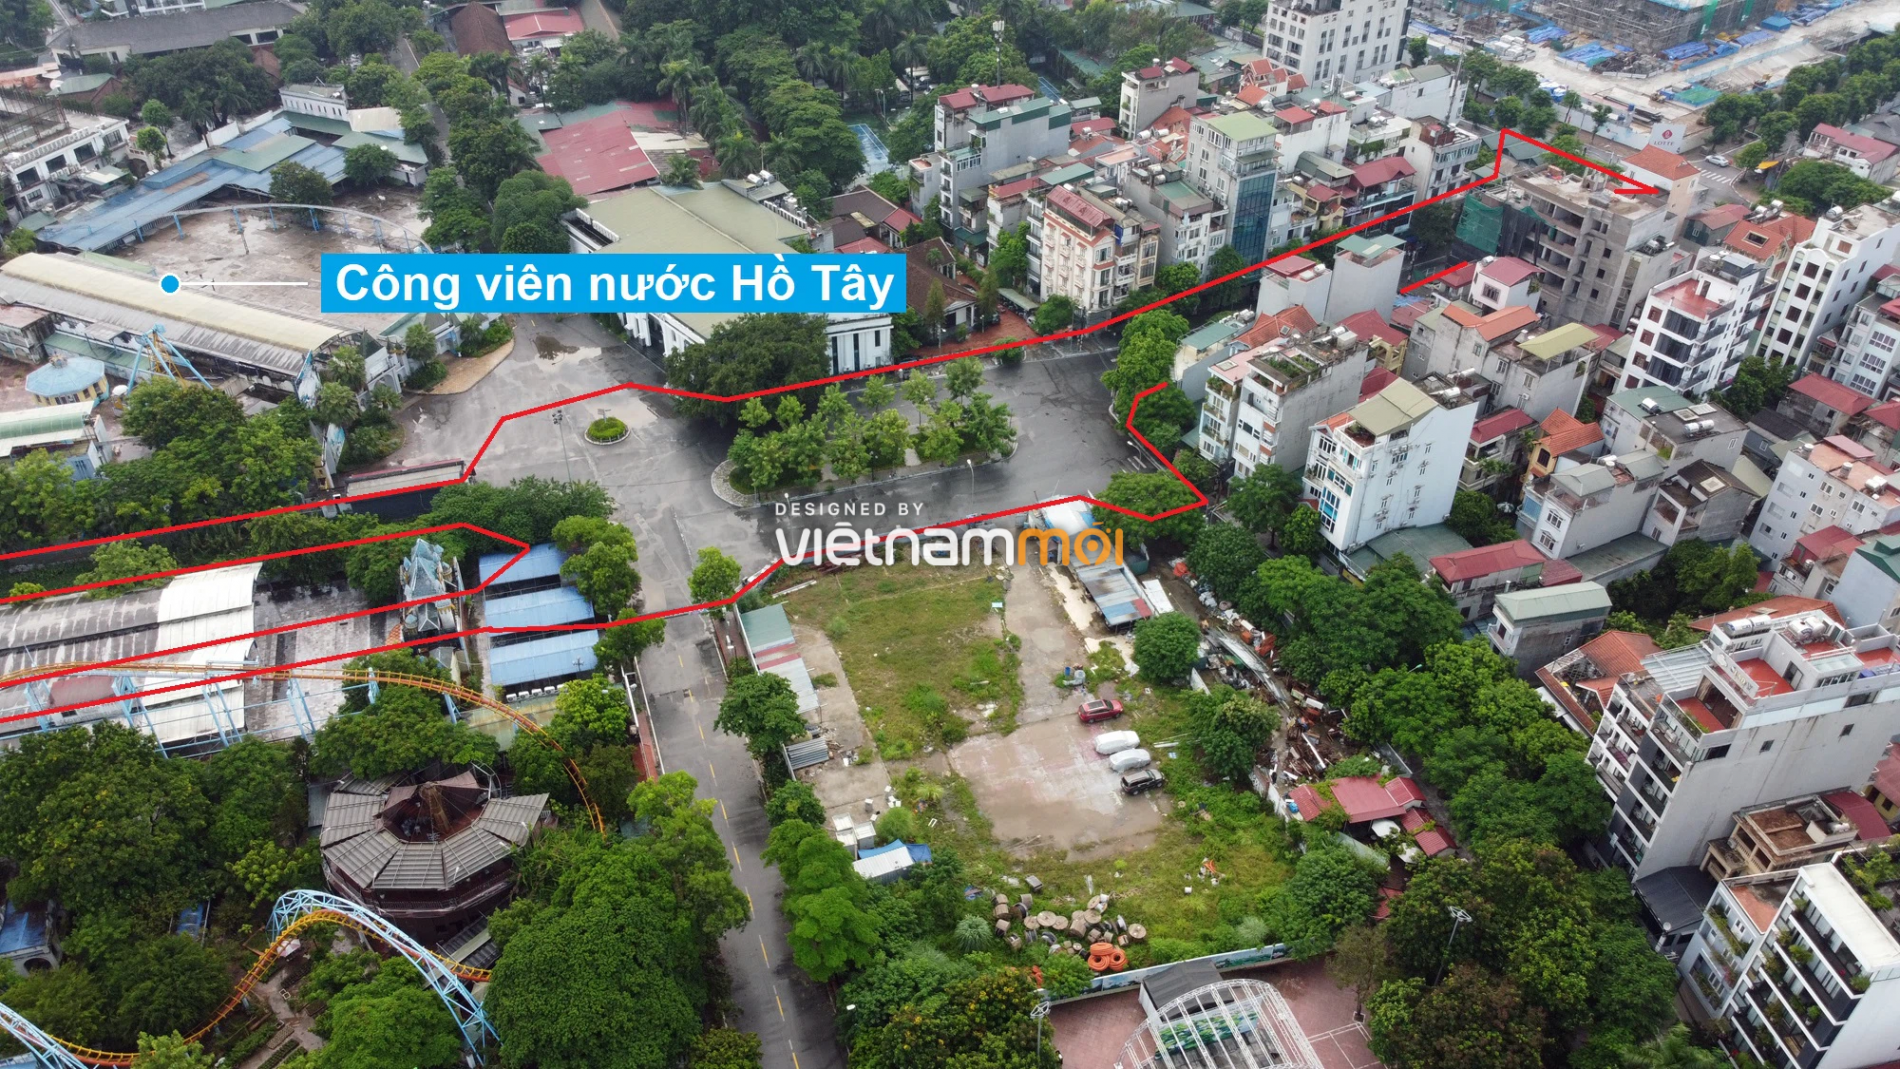 Những khu đất sắp thu hồi để mở đường ở quận Tây Hồ, Hà Nội (phần 2) - Ảnh 10.